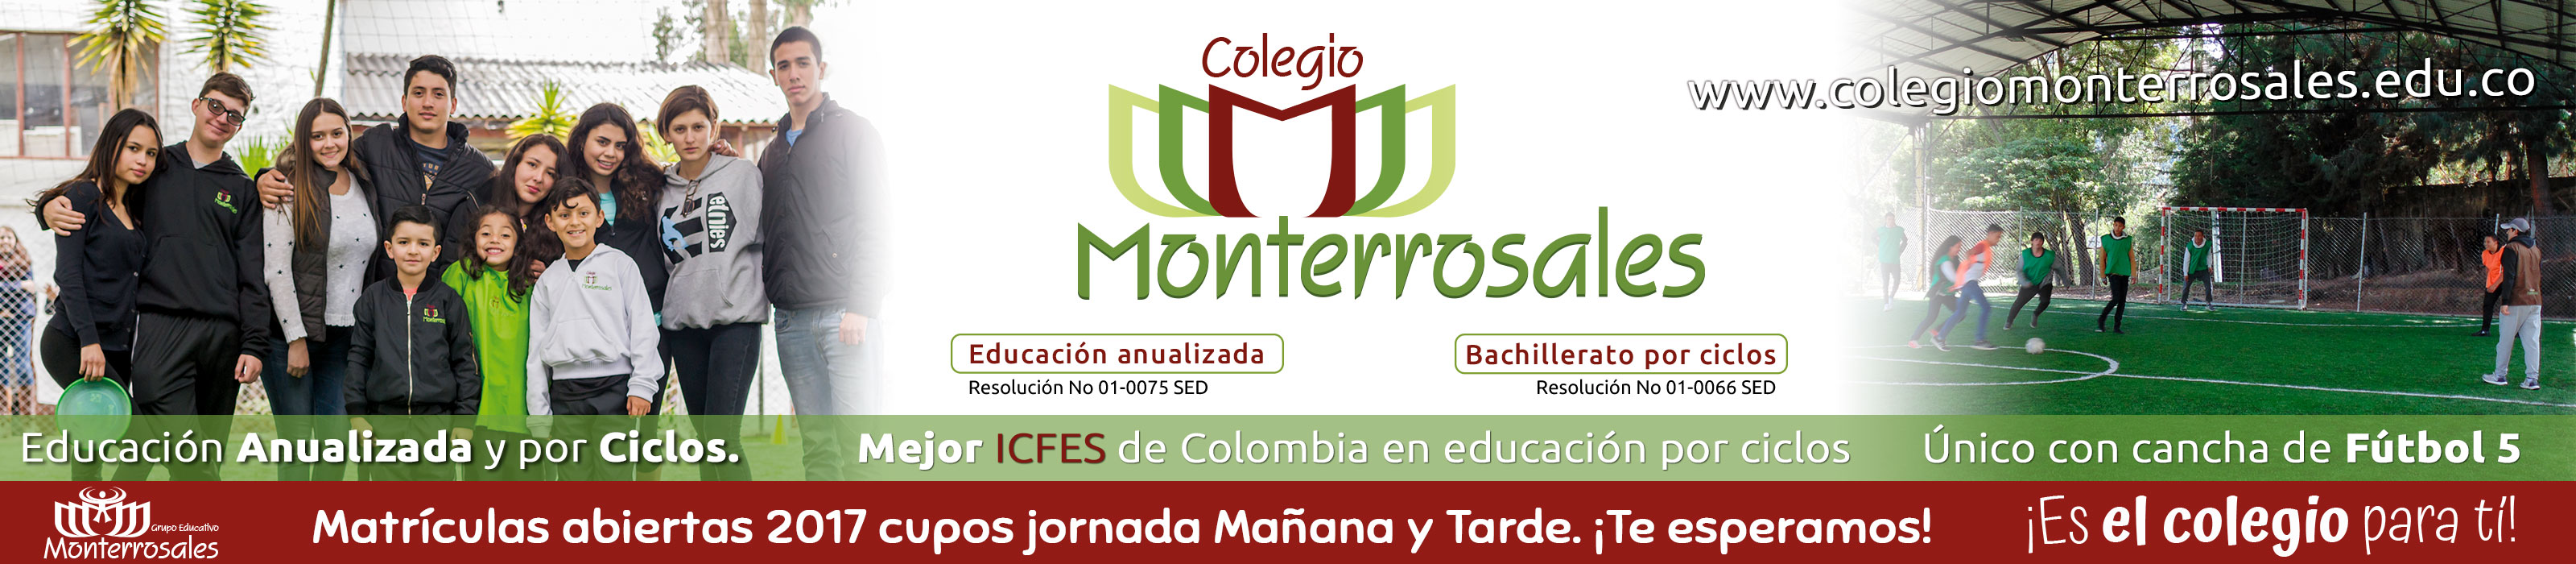 tl_files/2017/bachillerato-por-ciclos-bogota-colegio-monterrosales (3).jpg